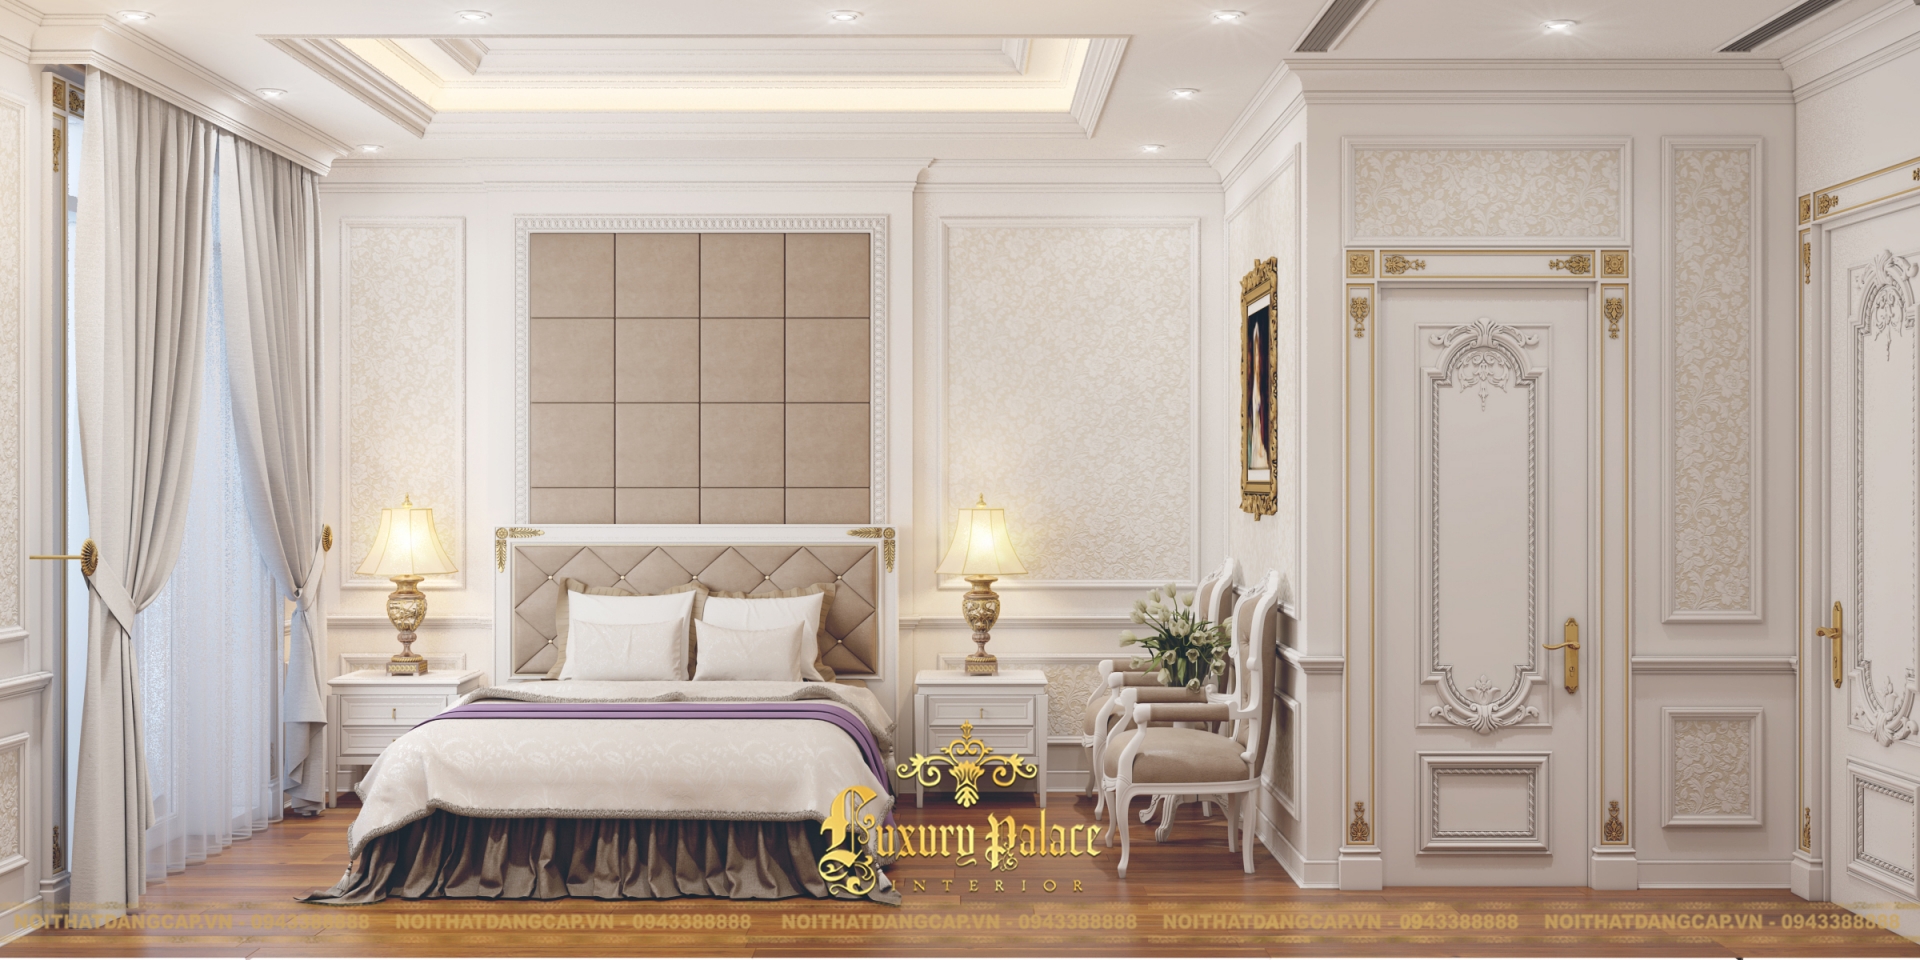 Mẫu thiết kế phòng ngủ phong cách tân cổ điển châu Âu 4